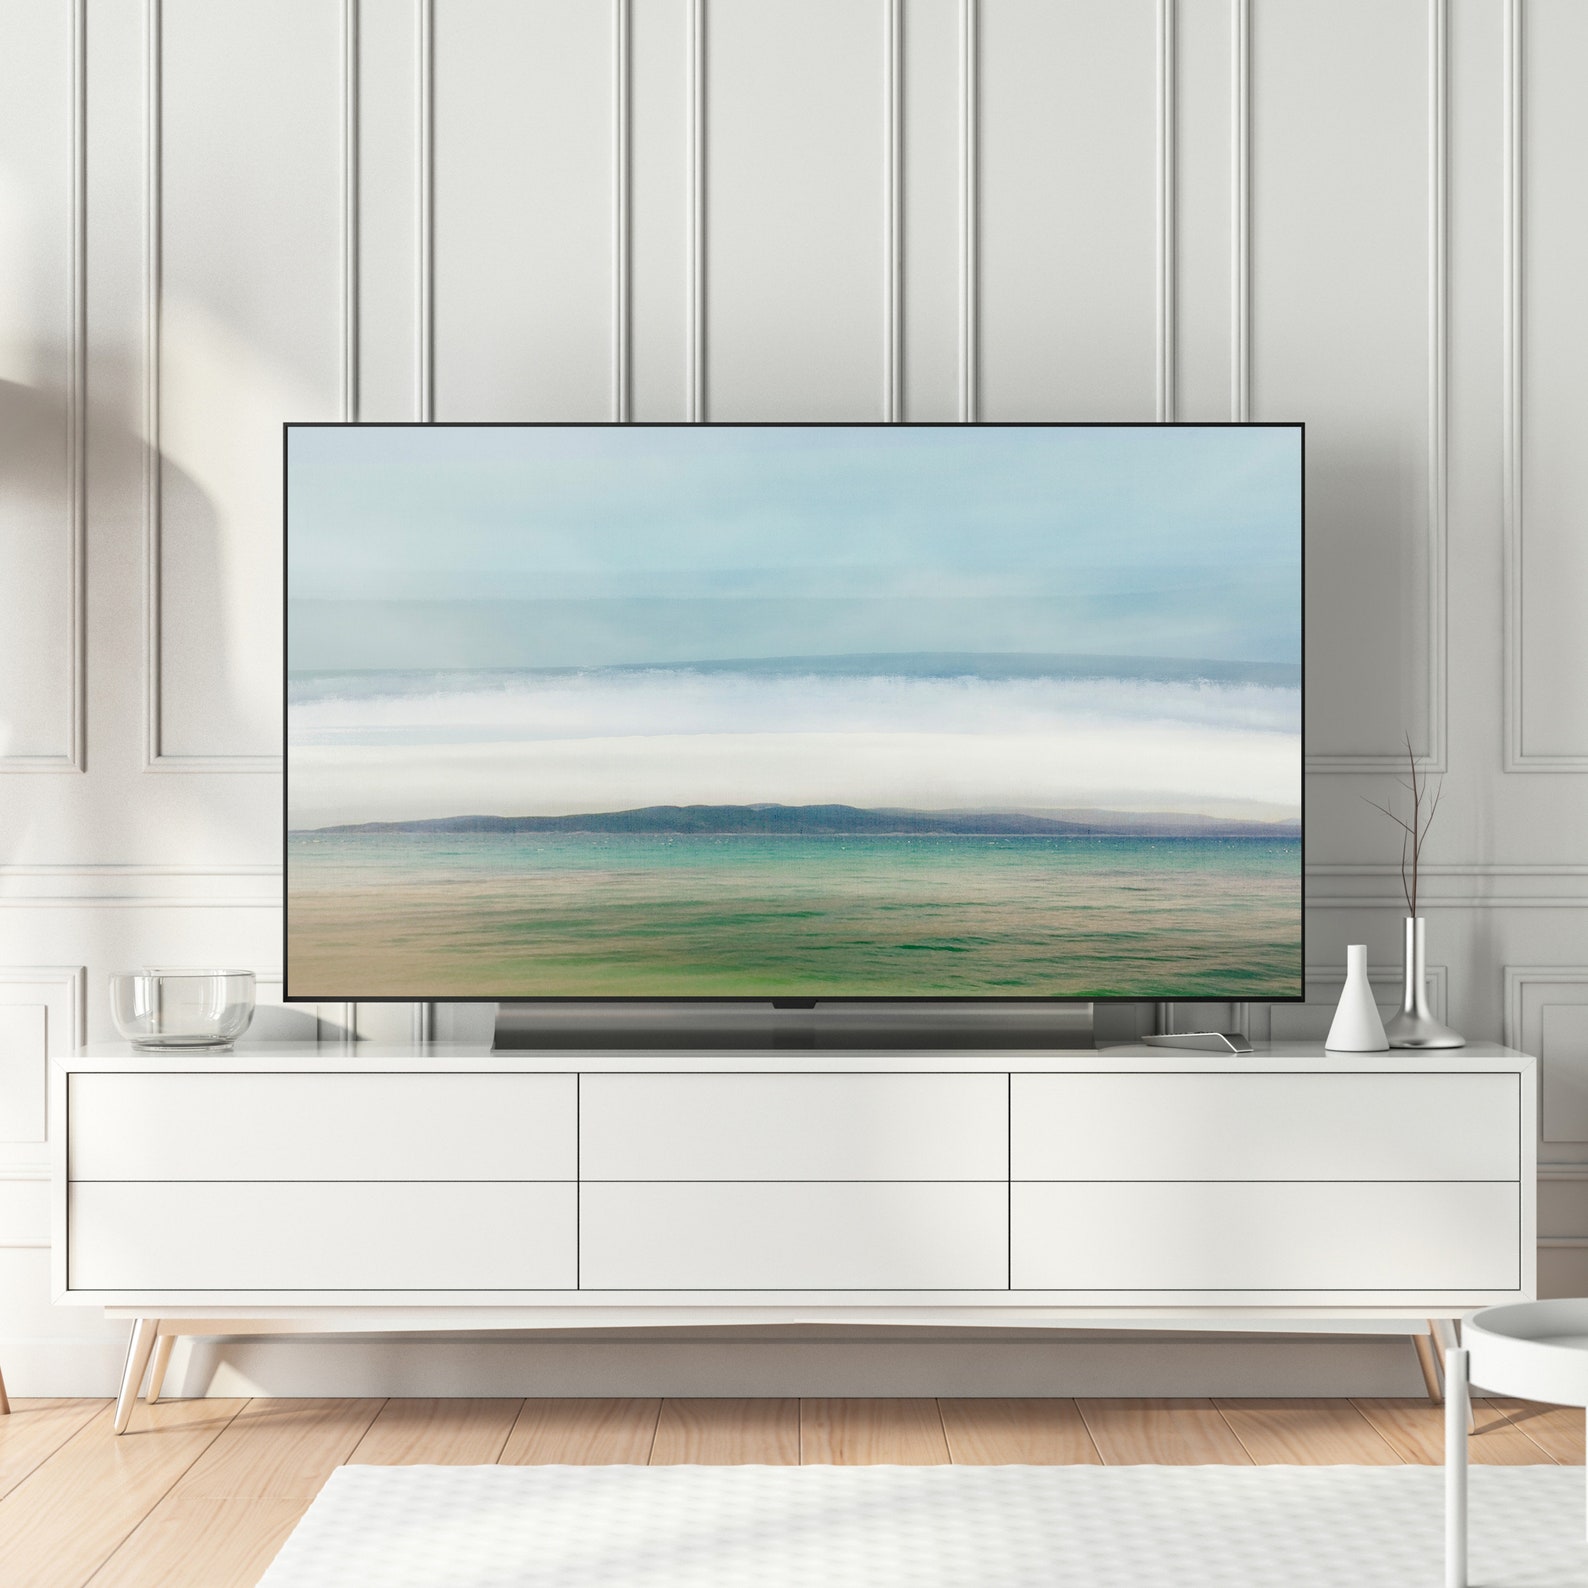 Samsung Frame TV Art. Instant Download Abstract Landscape - Etsy